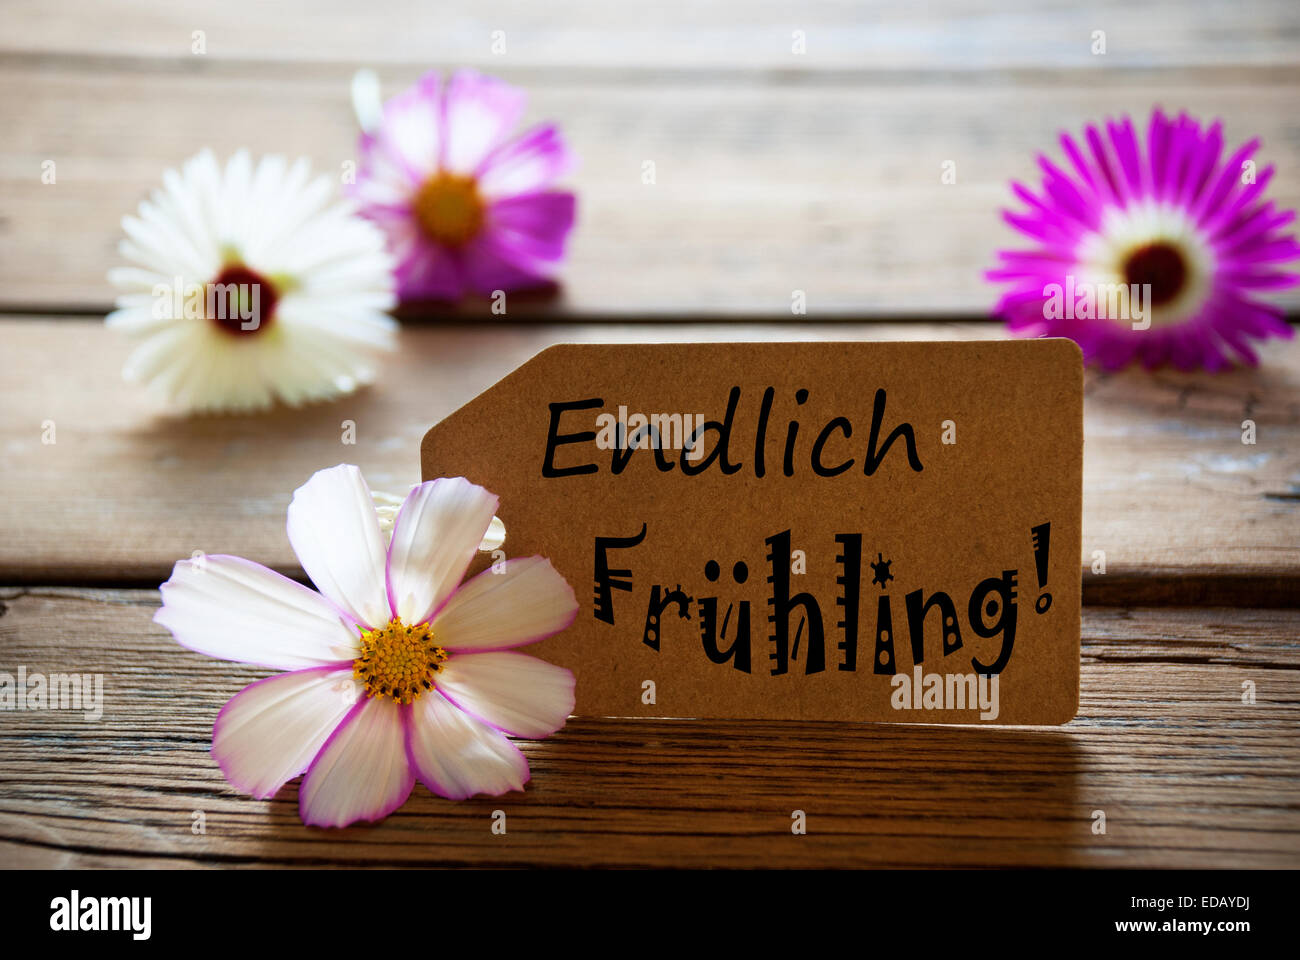 Etichetta marrone con testo tedesco Endlich Frühling con viola e bianco fiori Cosmea su sfondo di legno Vintage retrò o rustico Foto Stock